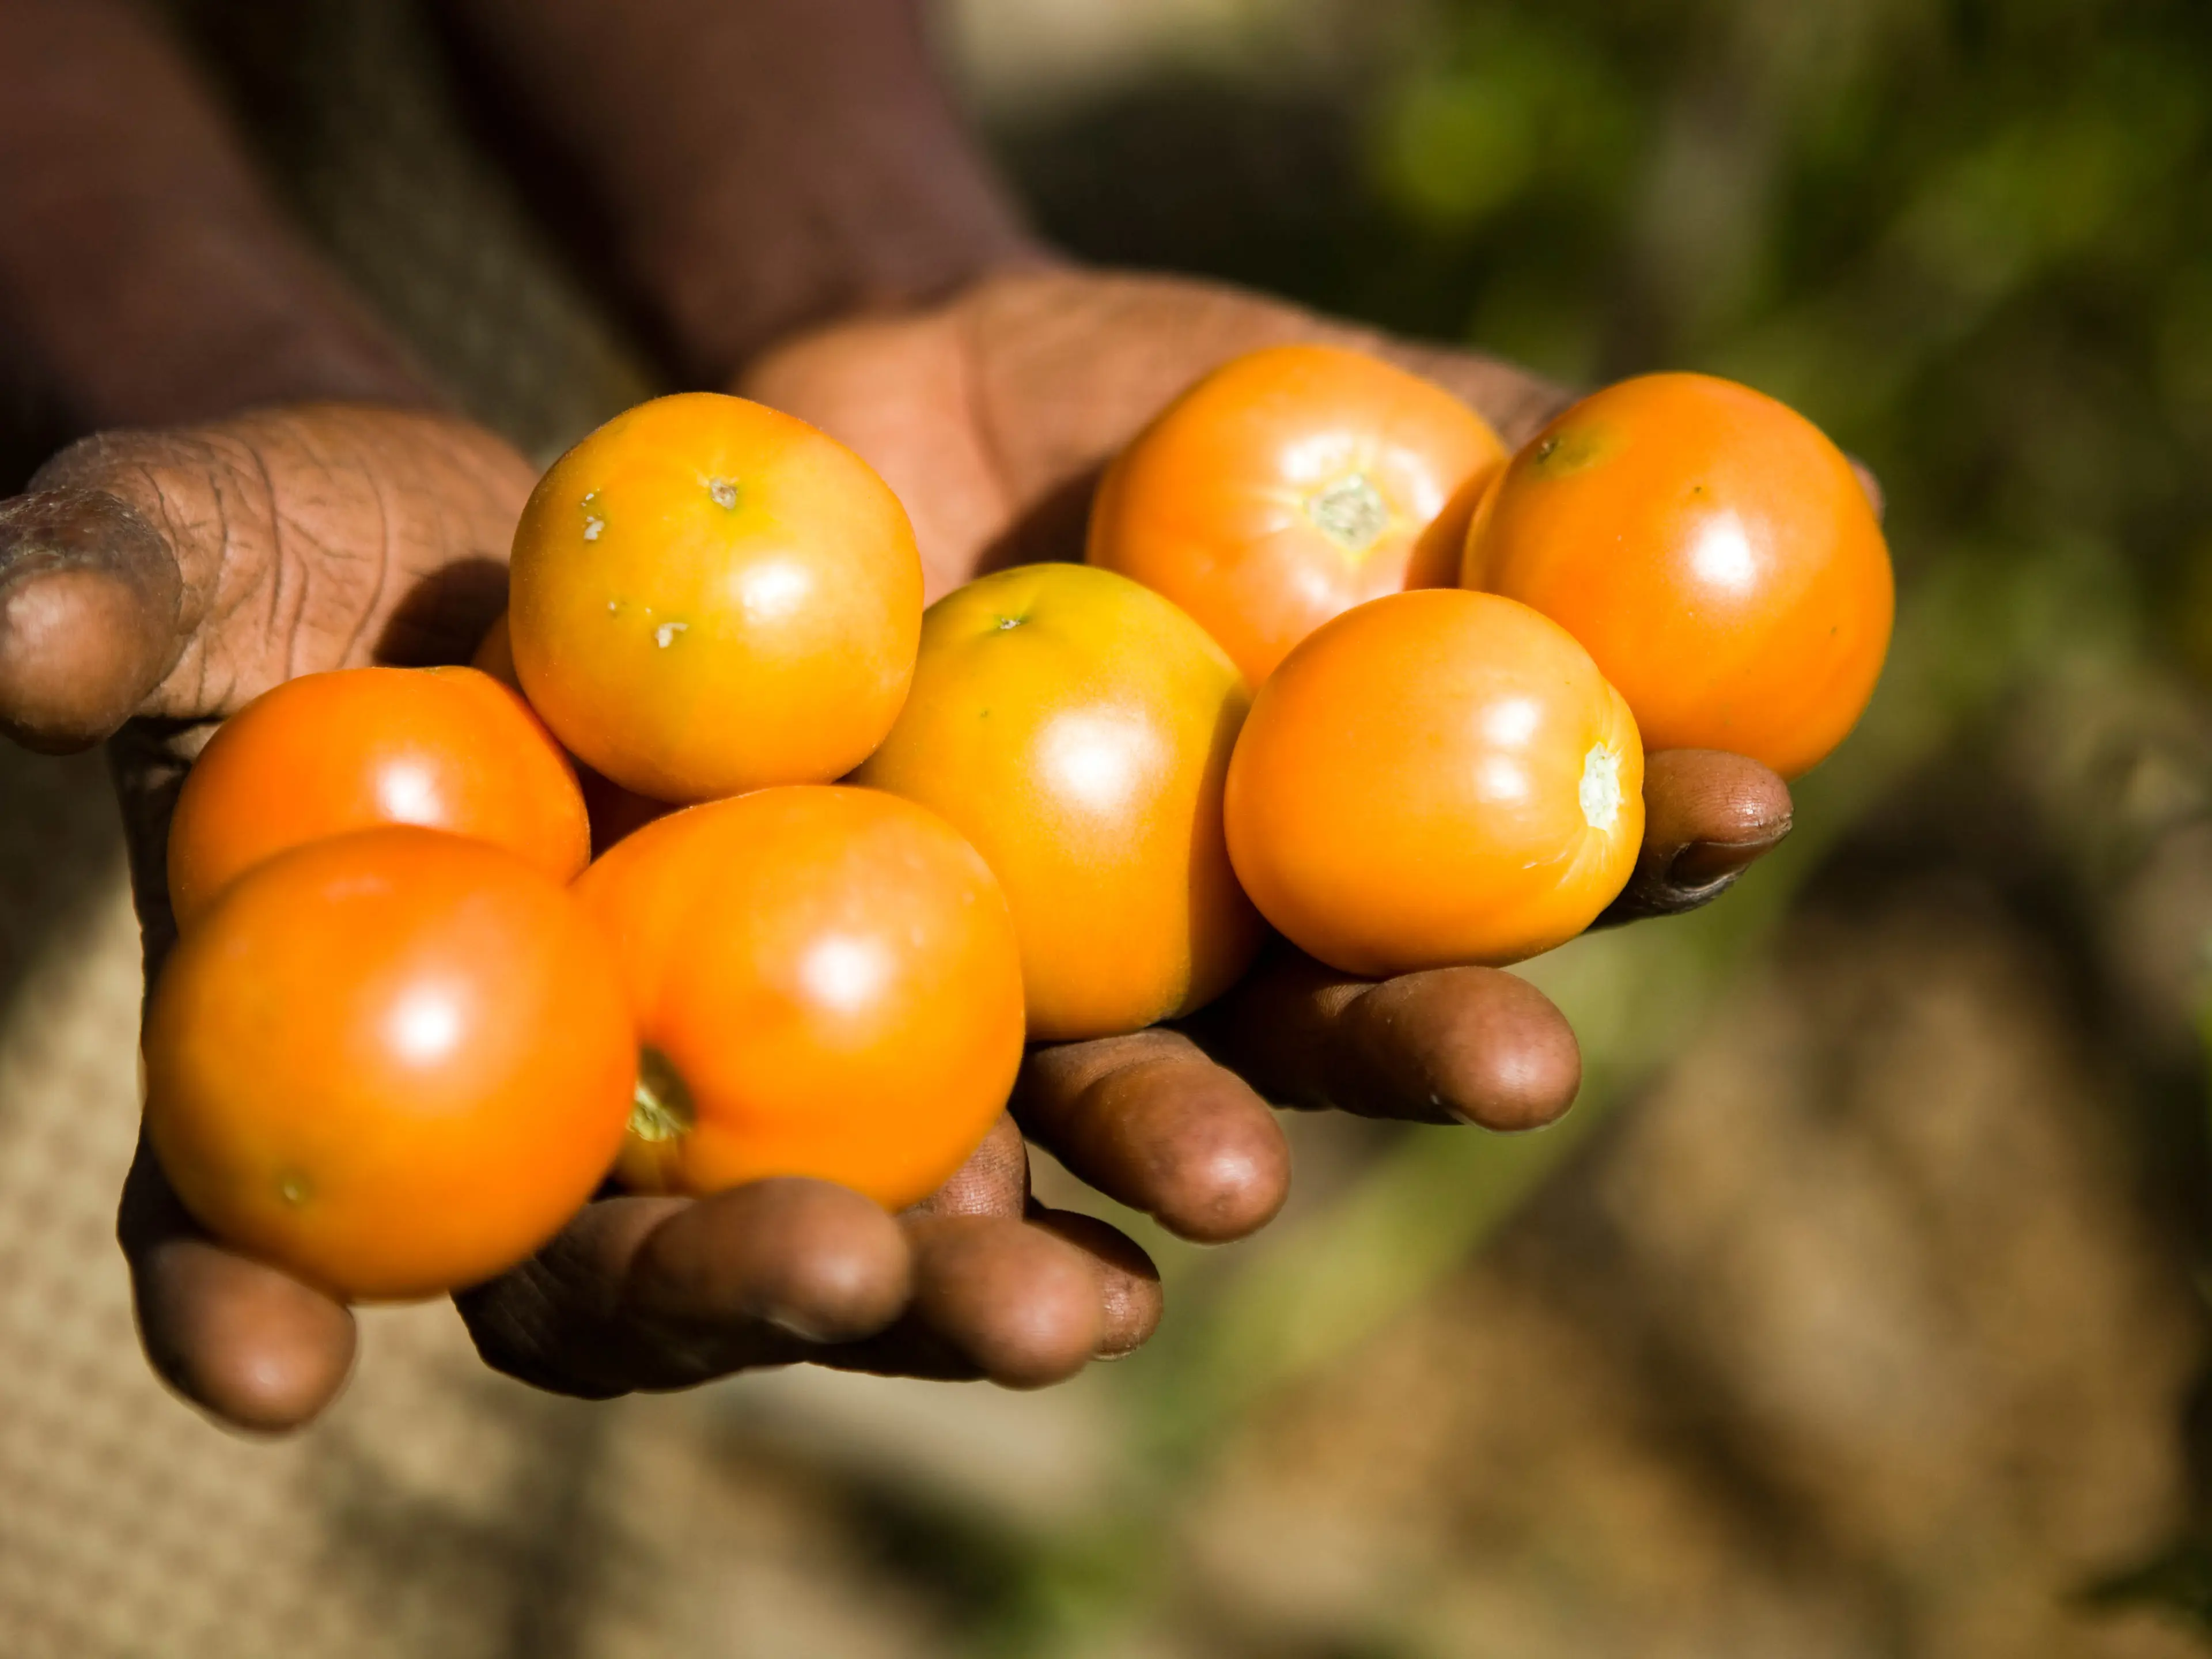 Zambia - tomatoes